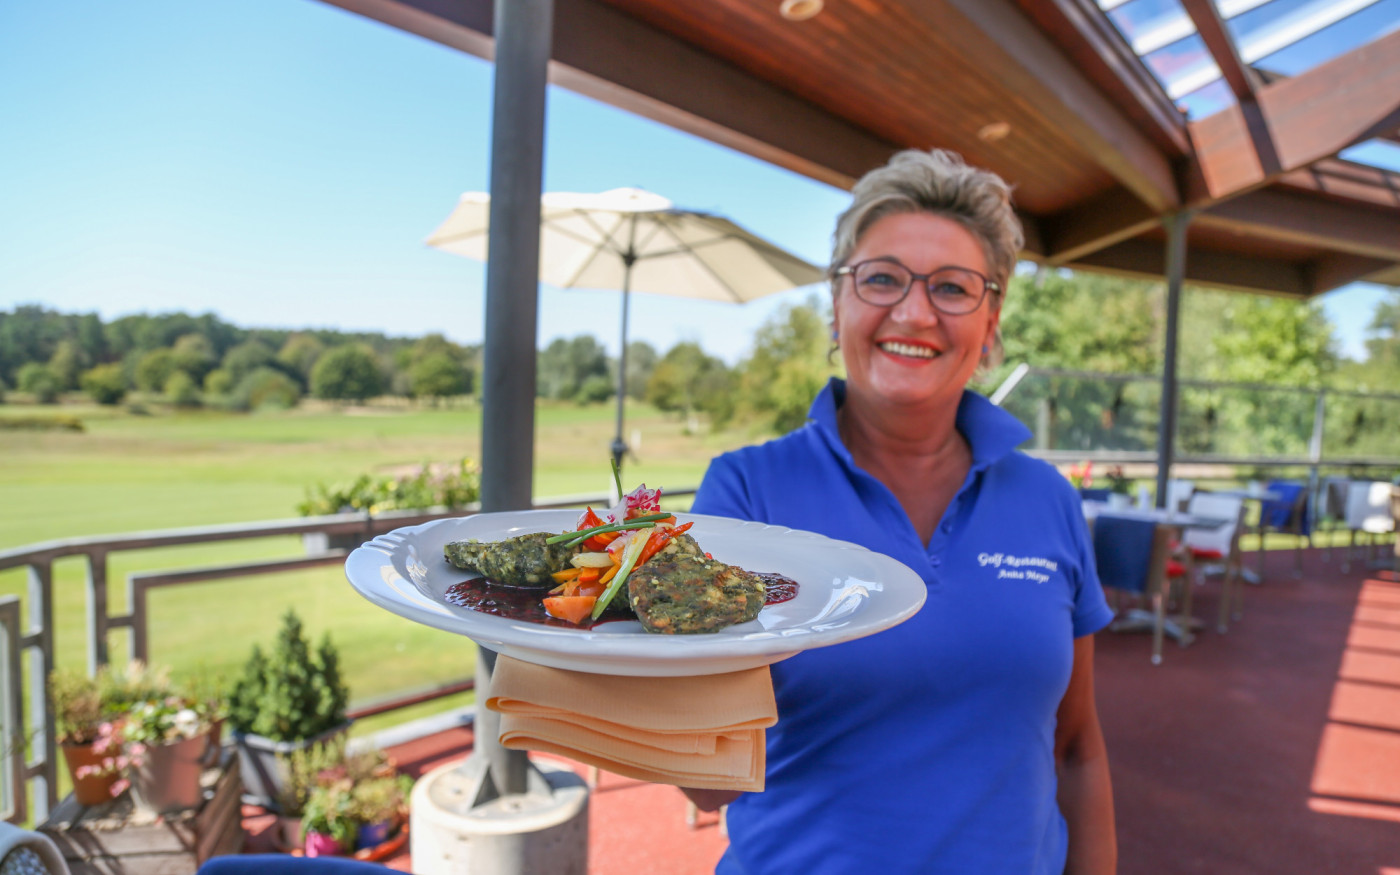 Enteneintopf, Grünkohl, Ratatouille mit Ziegenkäse - Gifhorns Golf-Restaurant bietet seine exquisiten Speisen nun zum Abholen an